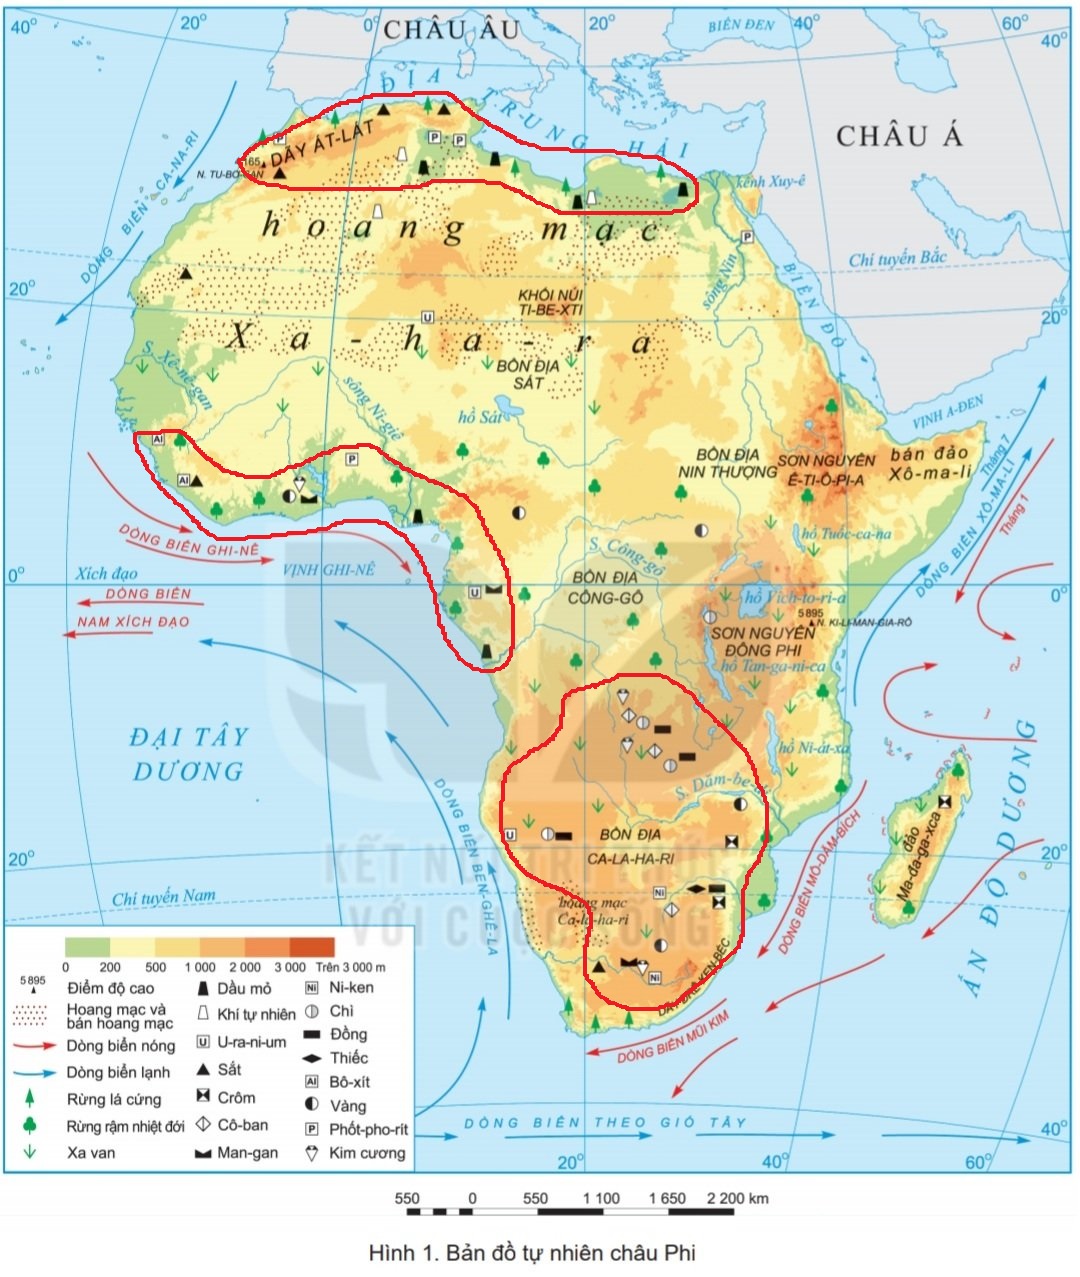 Với vị trí địa lý độc đáo, châu Phi 2024 đang trở thành điểm đến lý tưởng cho những người yêu thích khám phá và chinh phục. Với đông đảo dân cư đa dạng và những bãi biển tuyệt đẹp trải dài, châu Phi hứa hẹn sẽ mang đến cho bạn những kỷ niệm đáng nhớ.